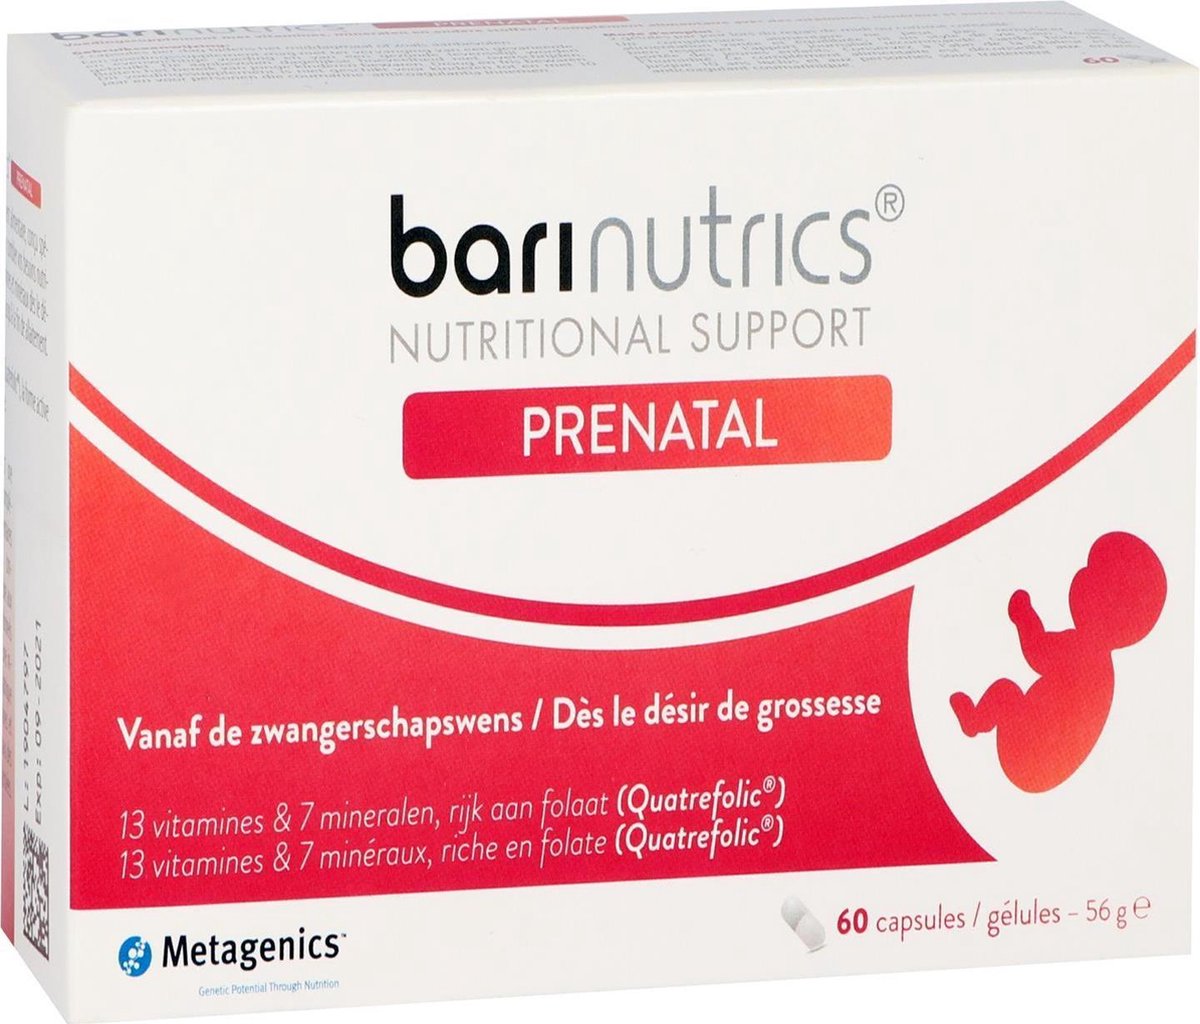 Barinutrics Prenatal - 60 capsules